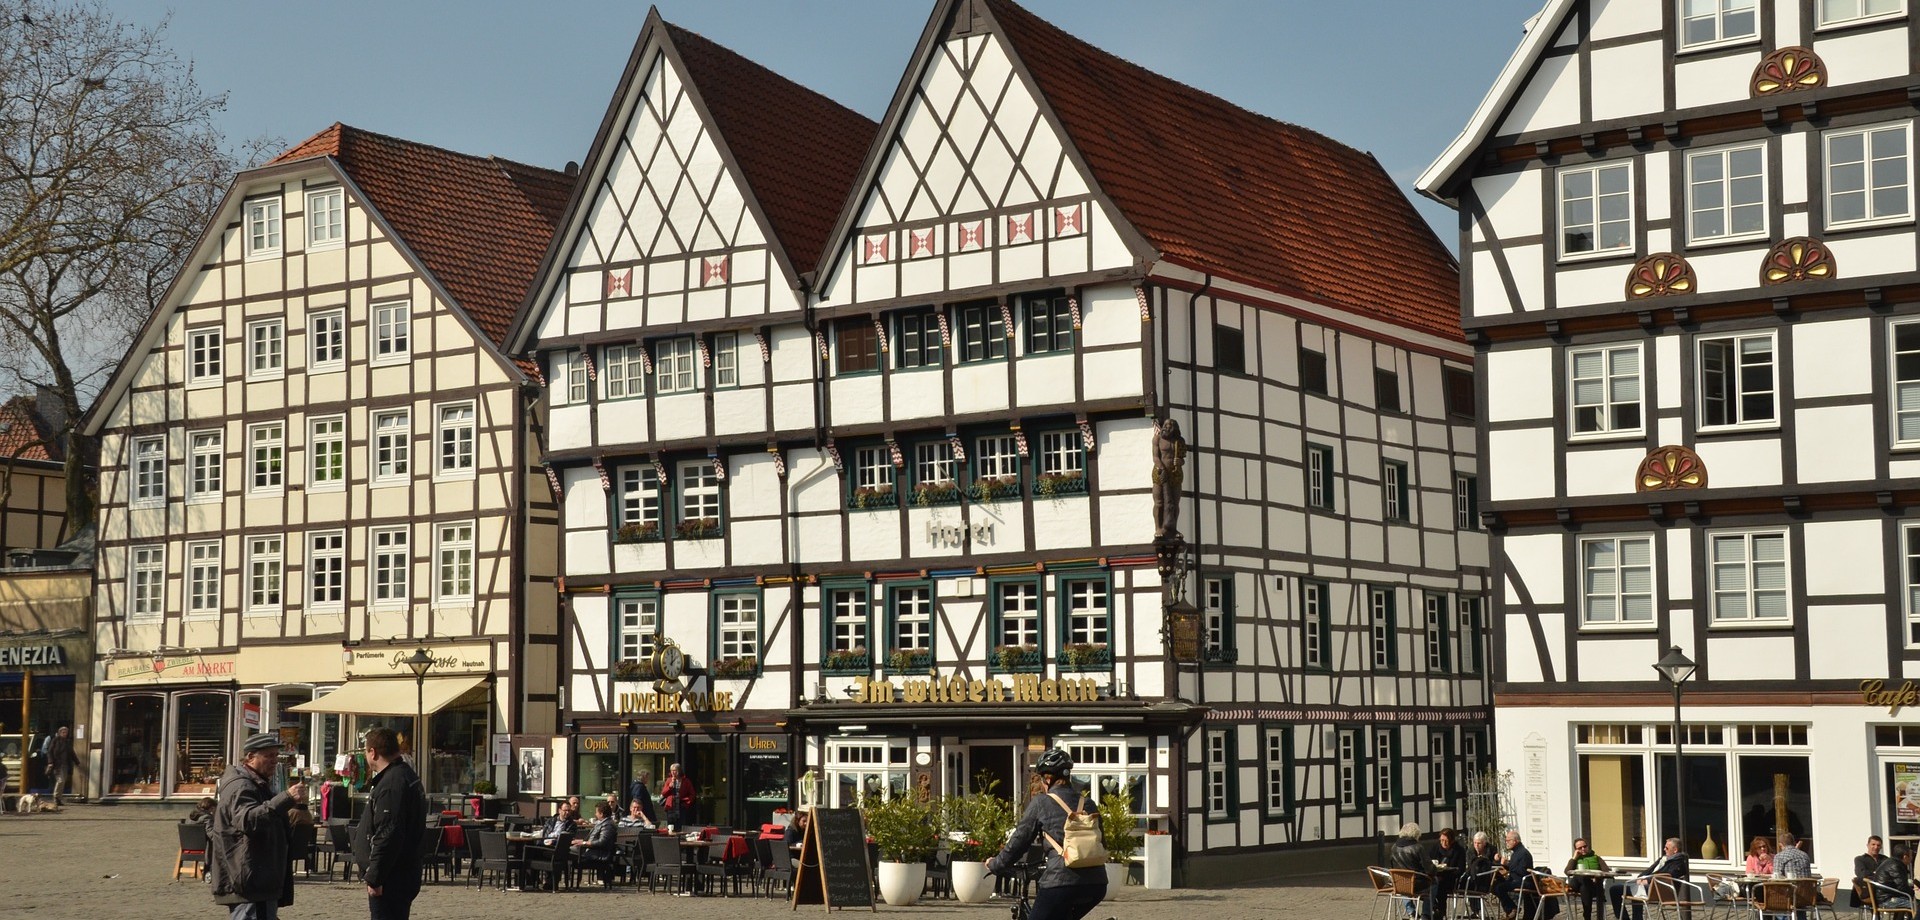 Fachwerkhäuser am Marktplatz in Soest. Quelle: Pixabay